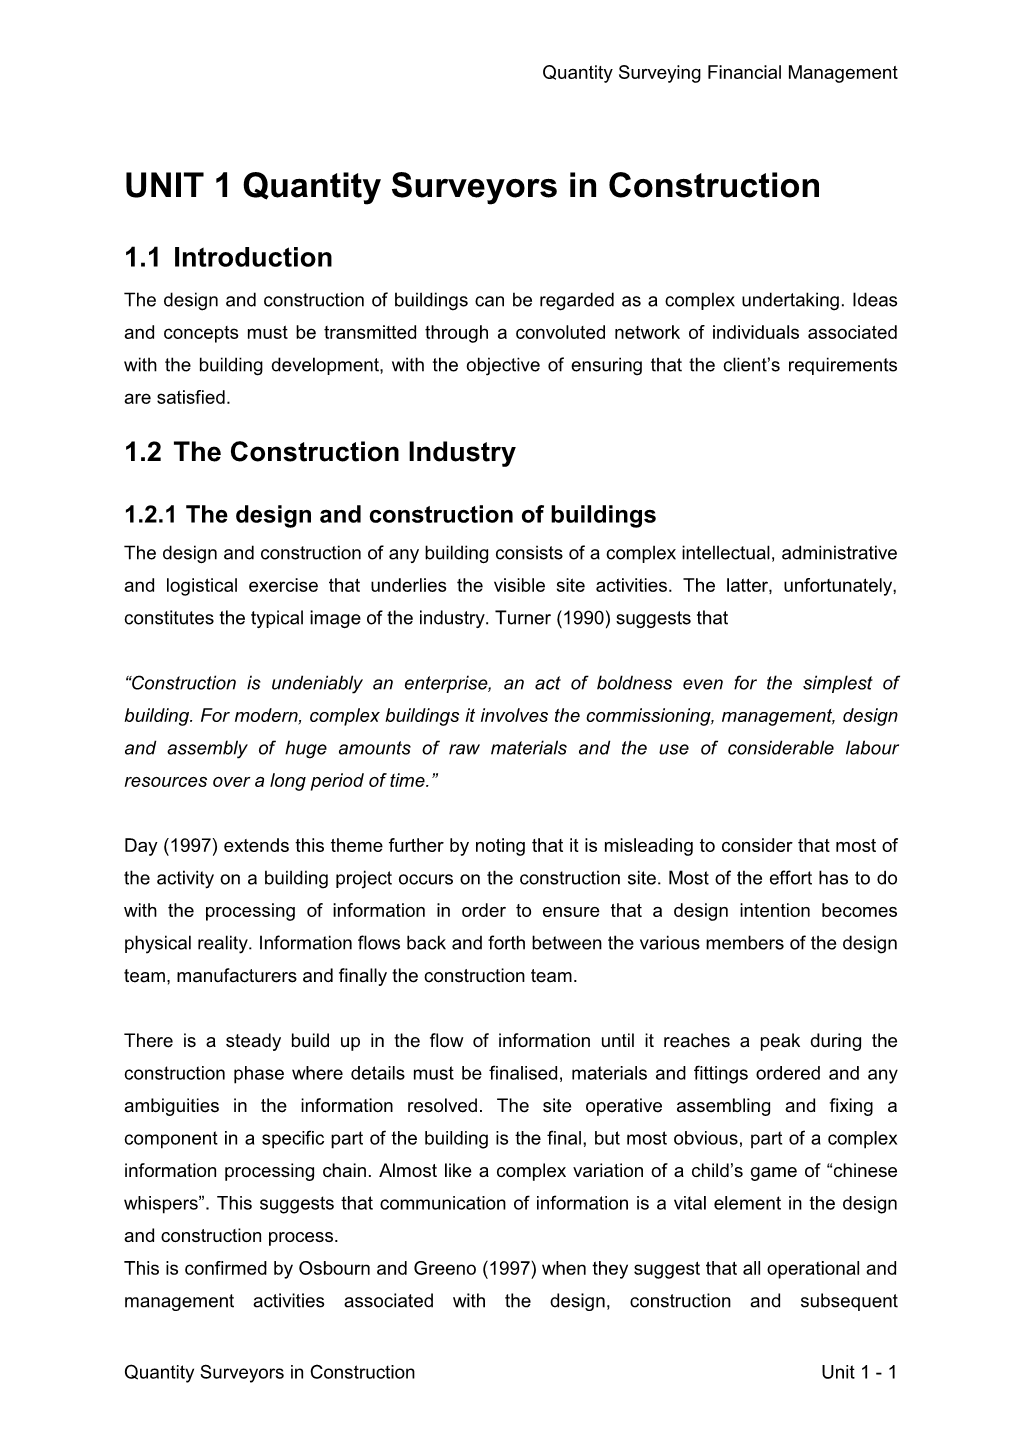 UNIT 1 Quantity Surveyors in Construction